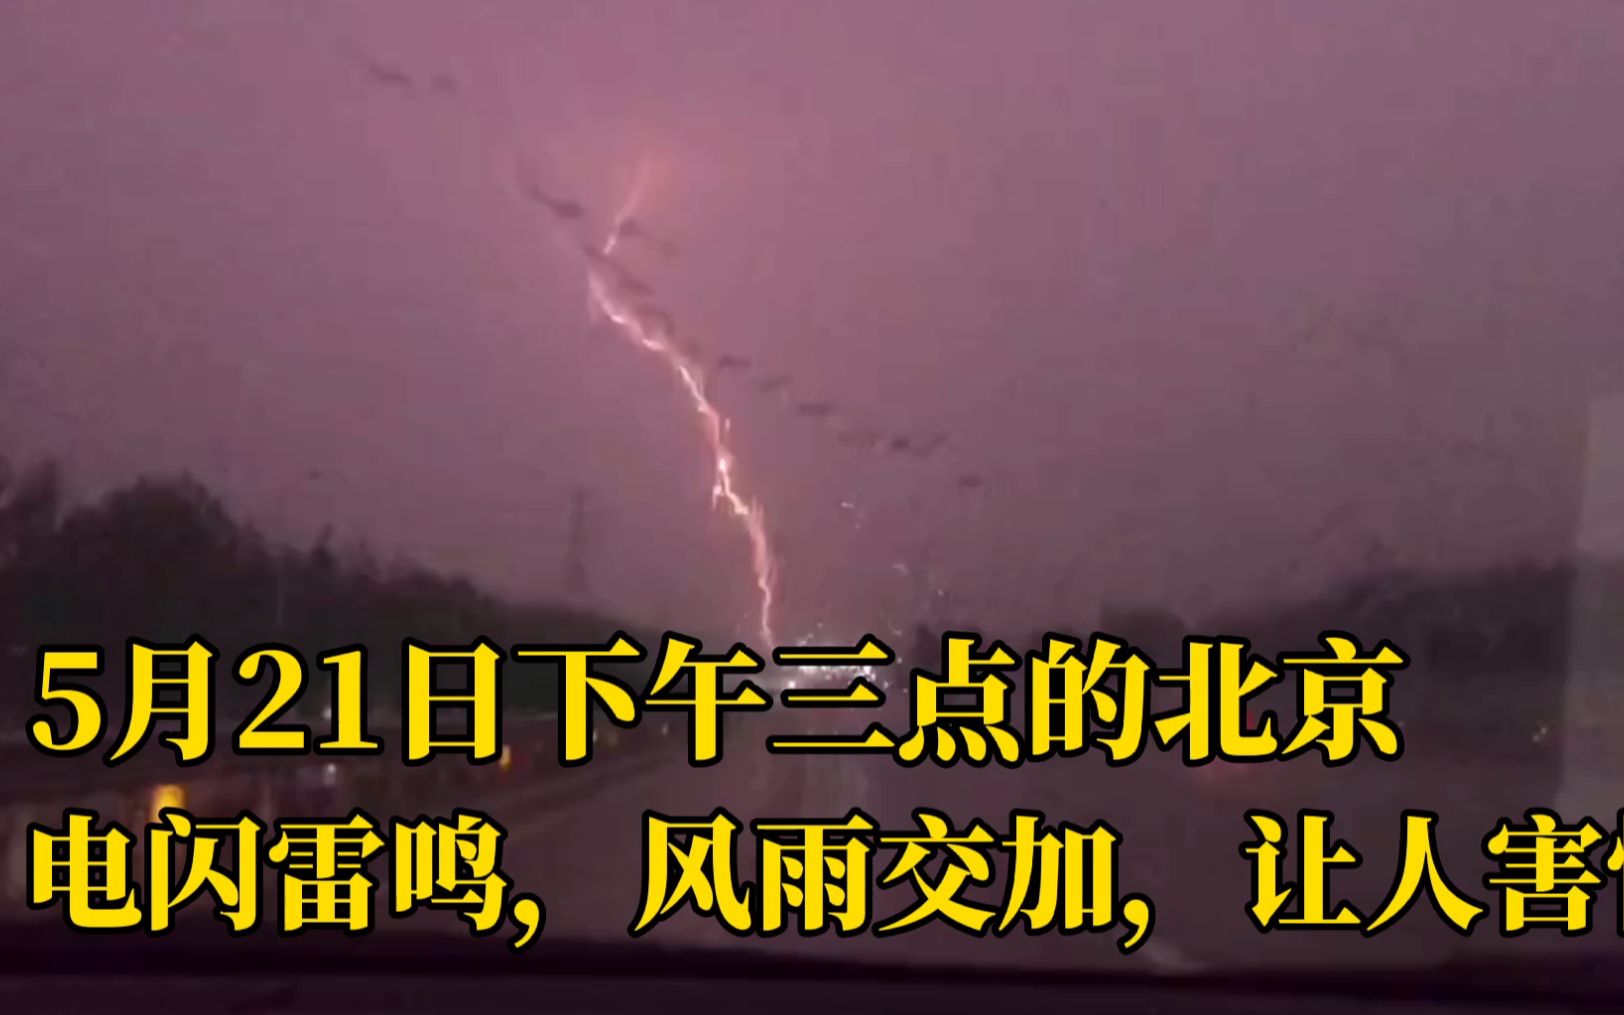 5月21日下午3点的北京 电闪雷鸣 风雨交加 提醒我们爱护大自然 哔哩哔哩 つロ干杯 Bilibili